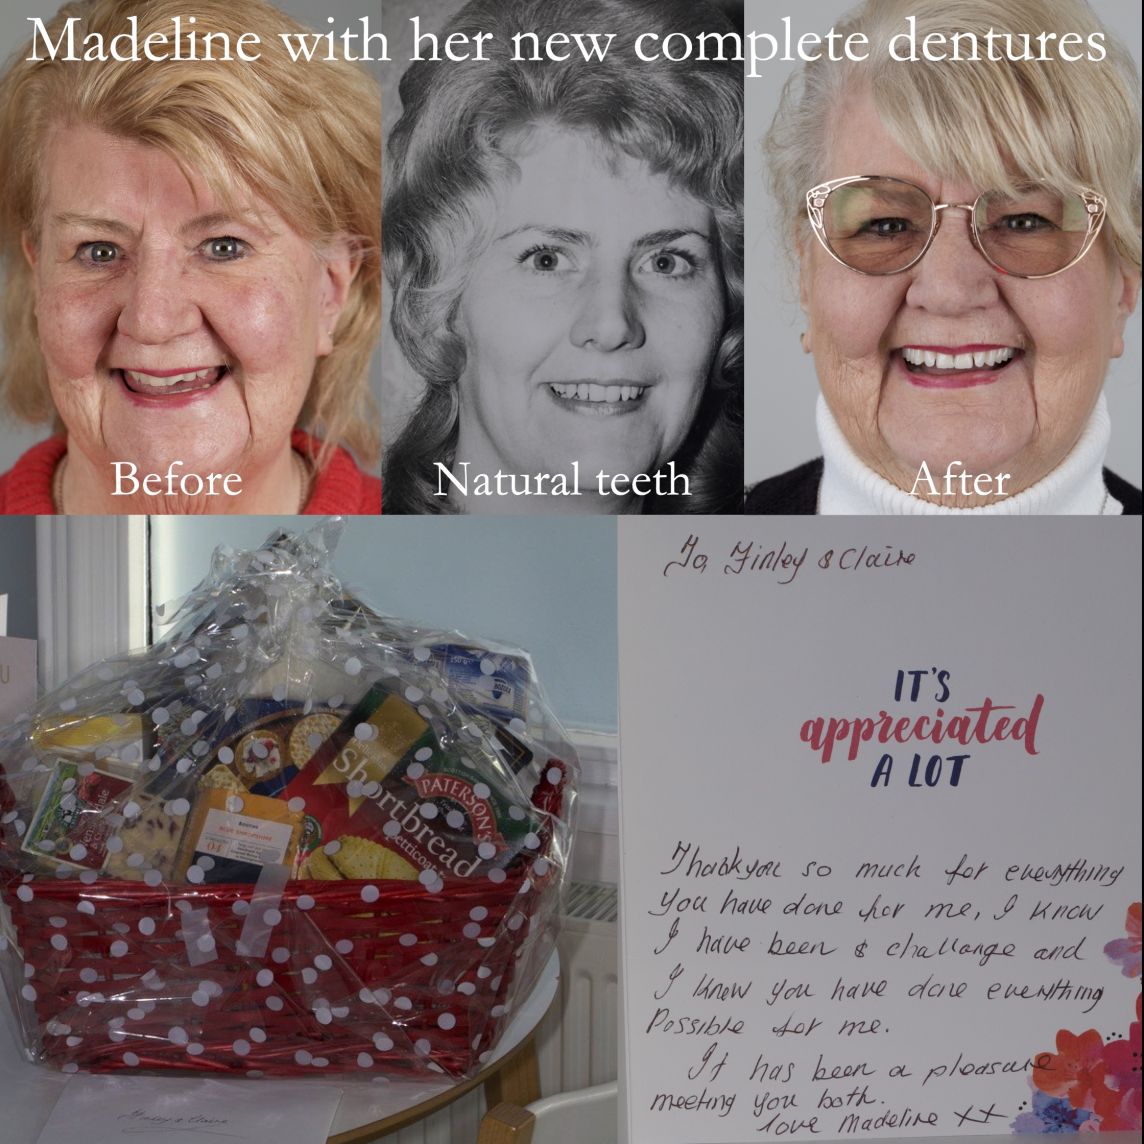 Madeline loves her new lifelike complete dentures